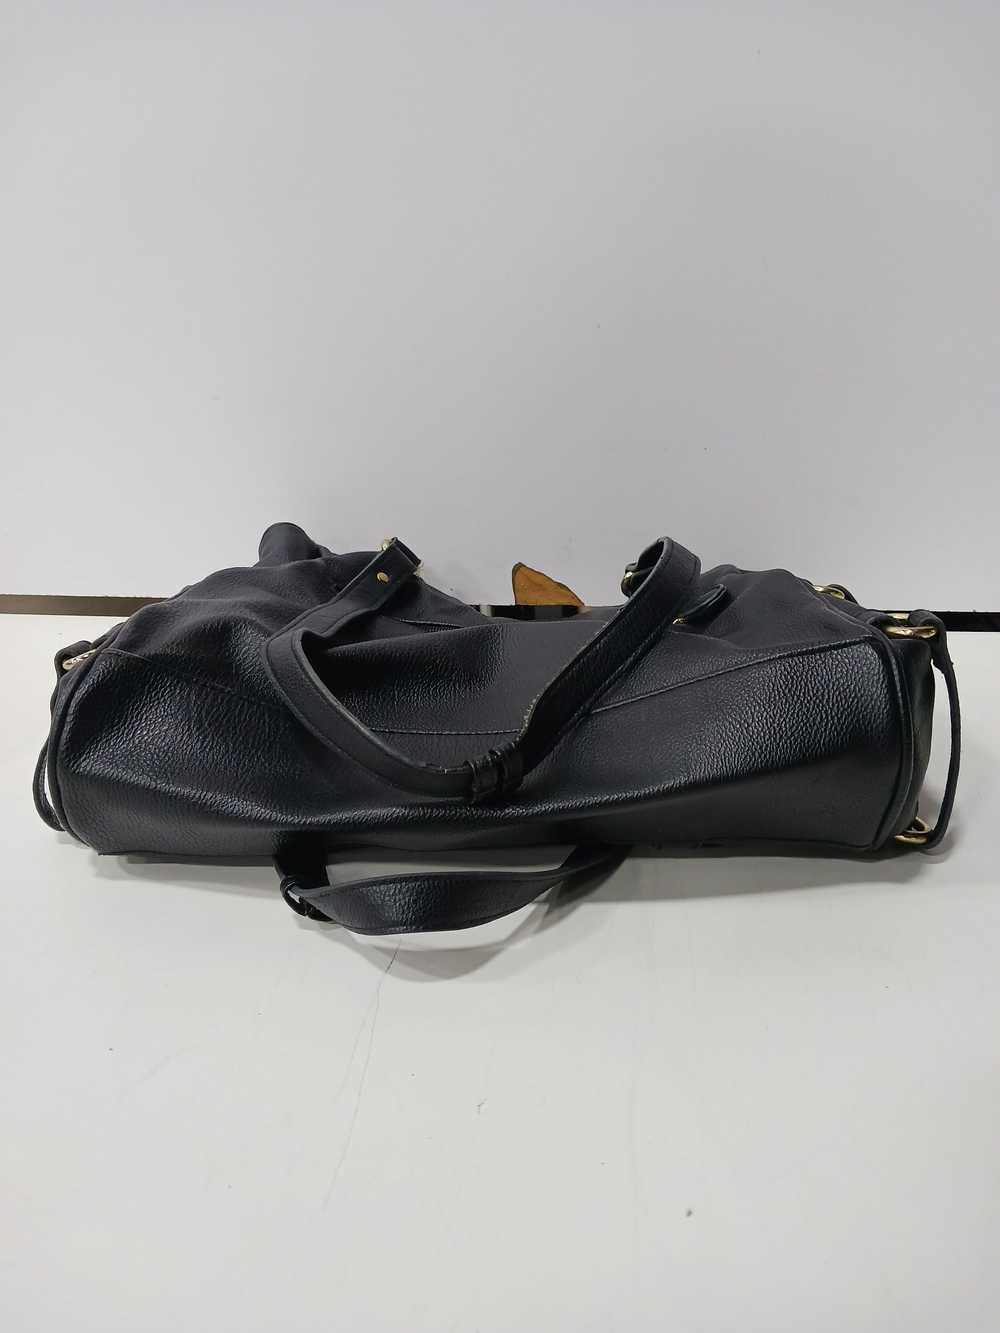 Nicole Miller Black Leather Bag - image 3